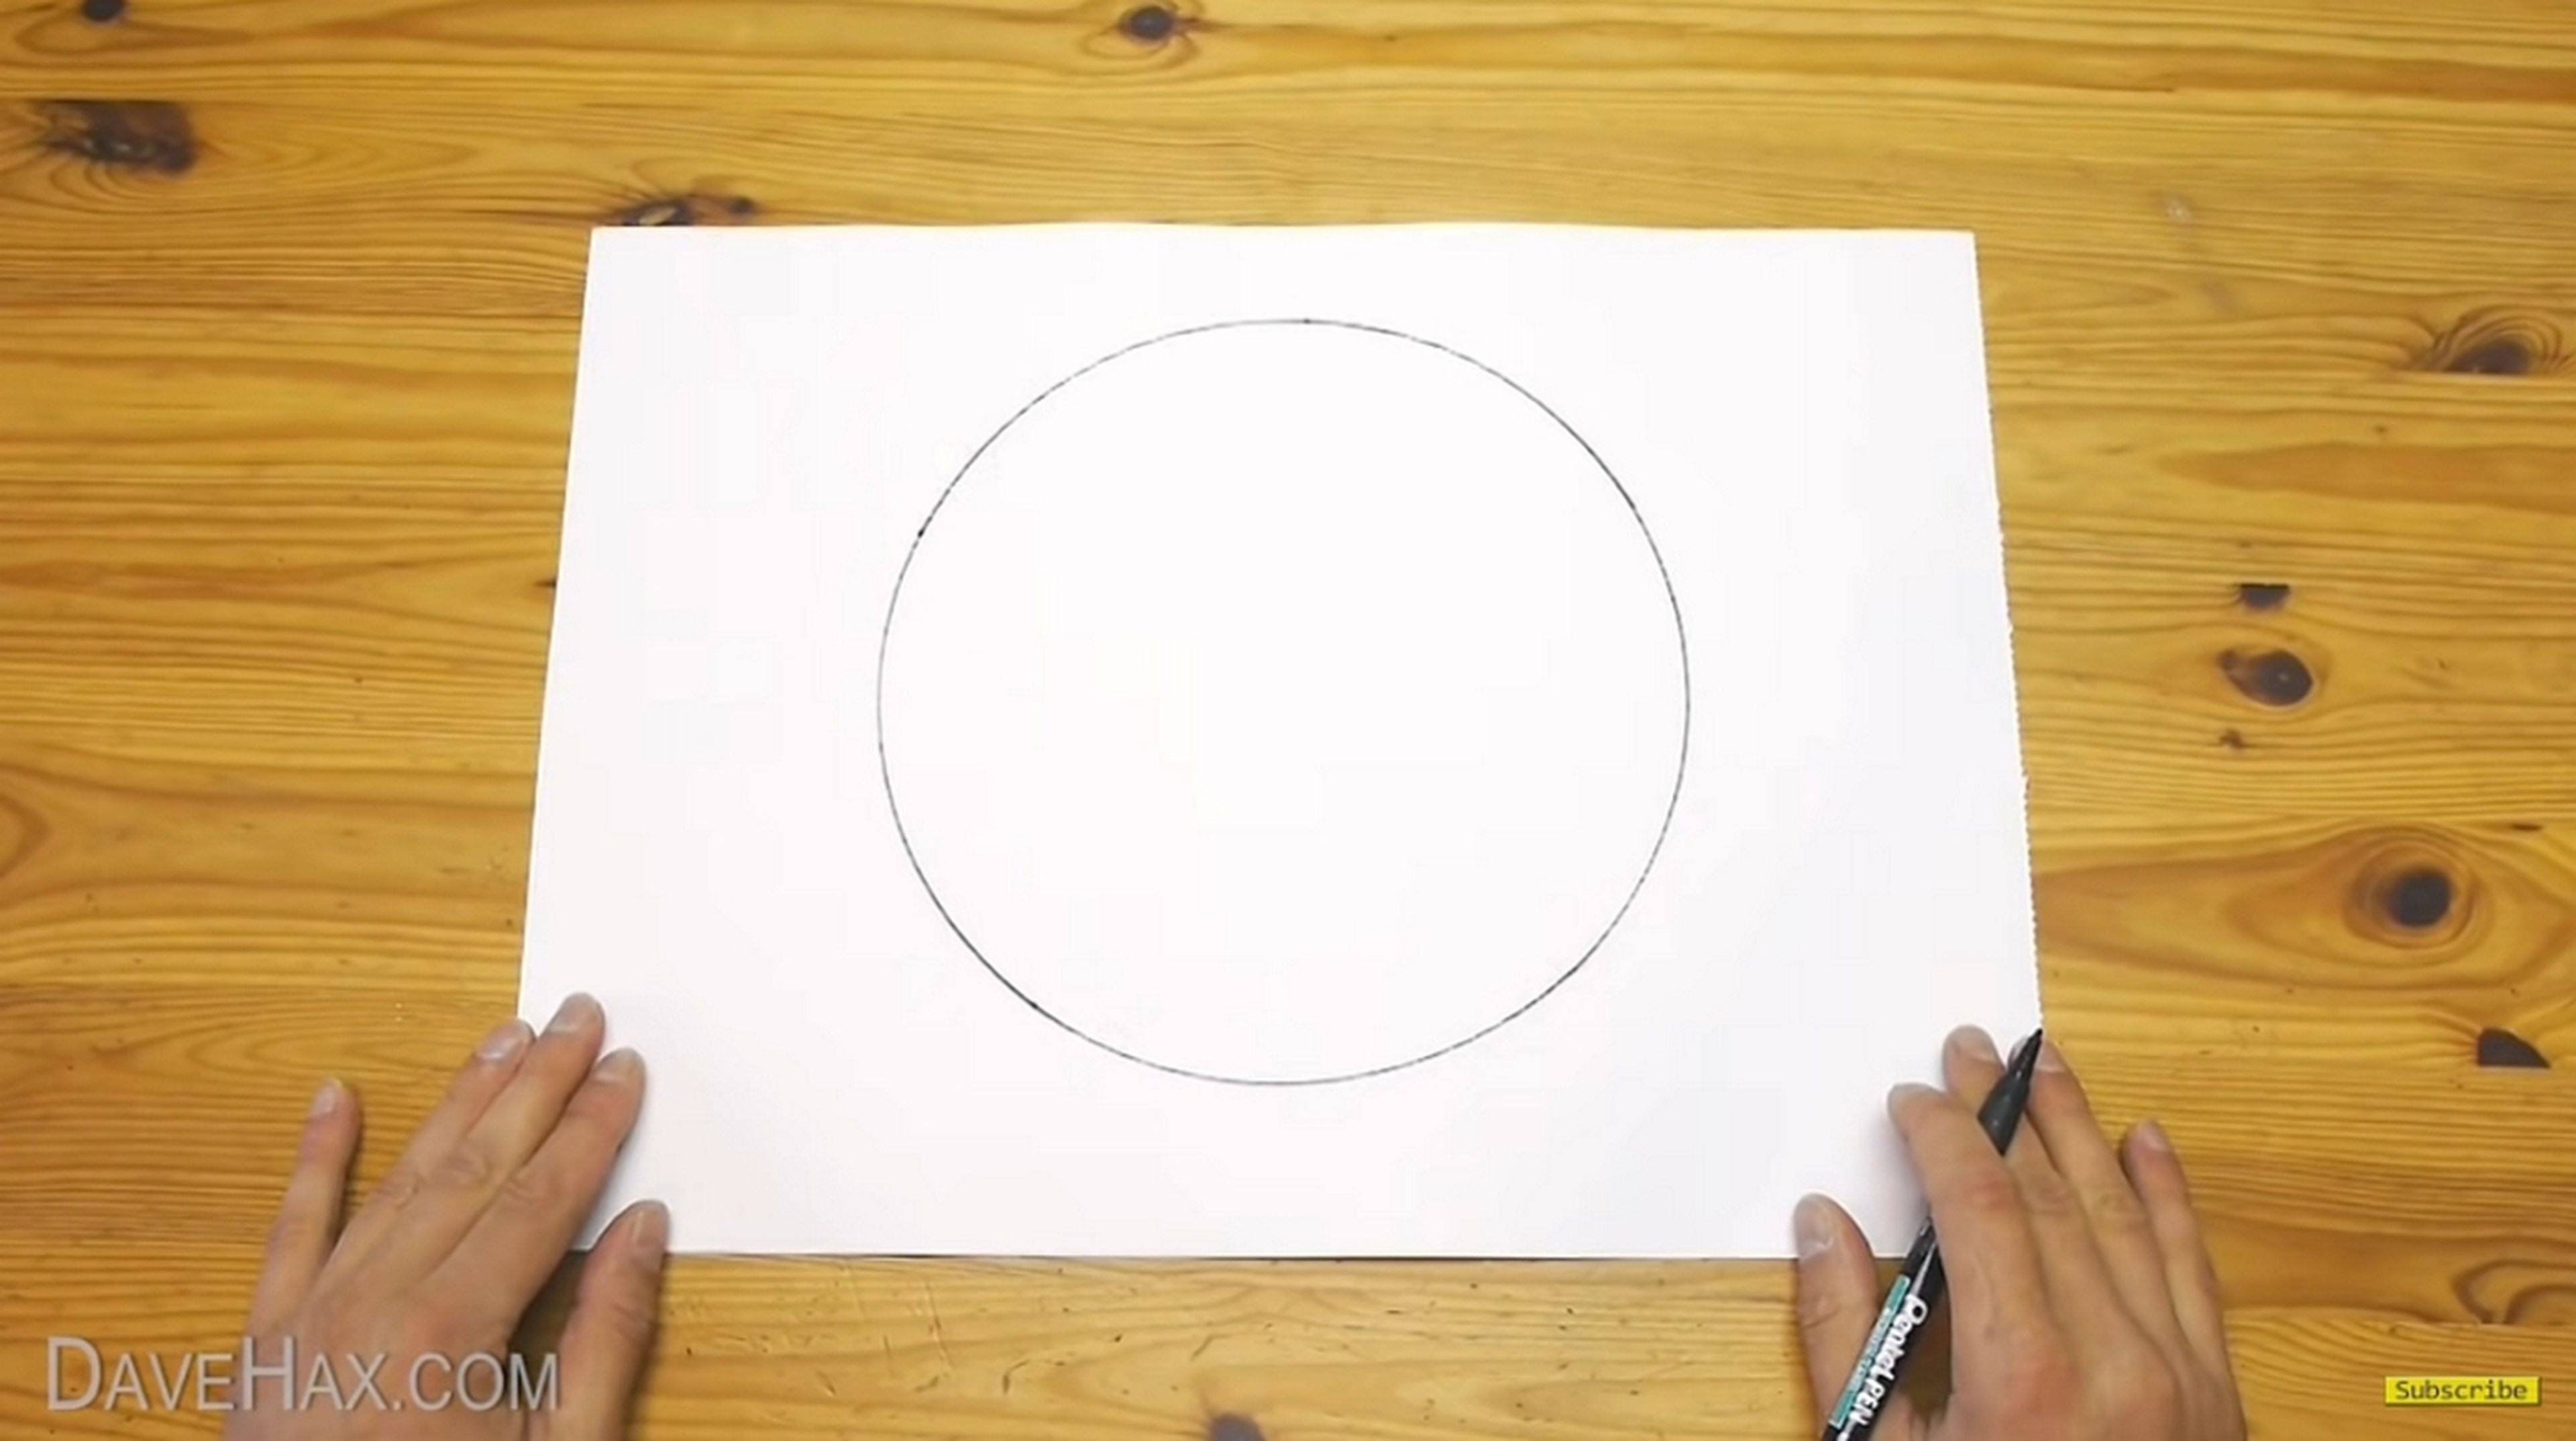 Cómo dibujar un círculo perfecto sin compás | Computer Hoy